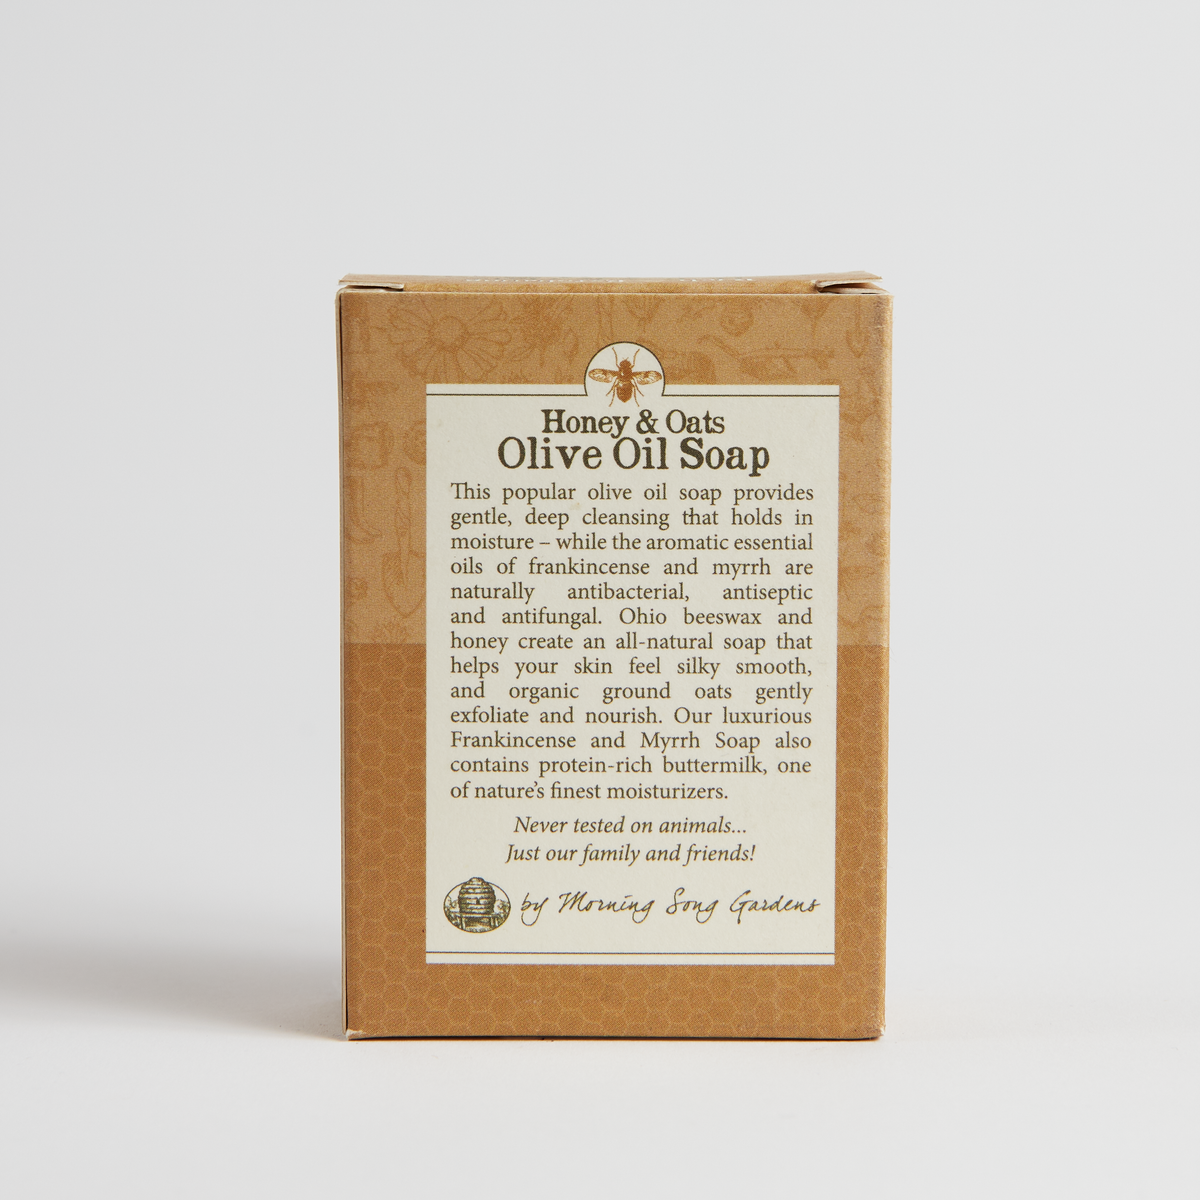 Morning Song Gardens Olive Oil Soap - Frankincense/Myrrh - 4.5 Oz